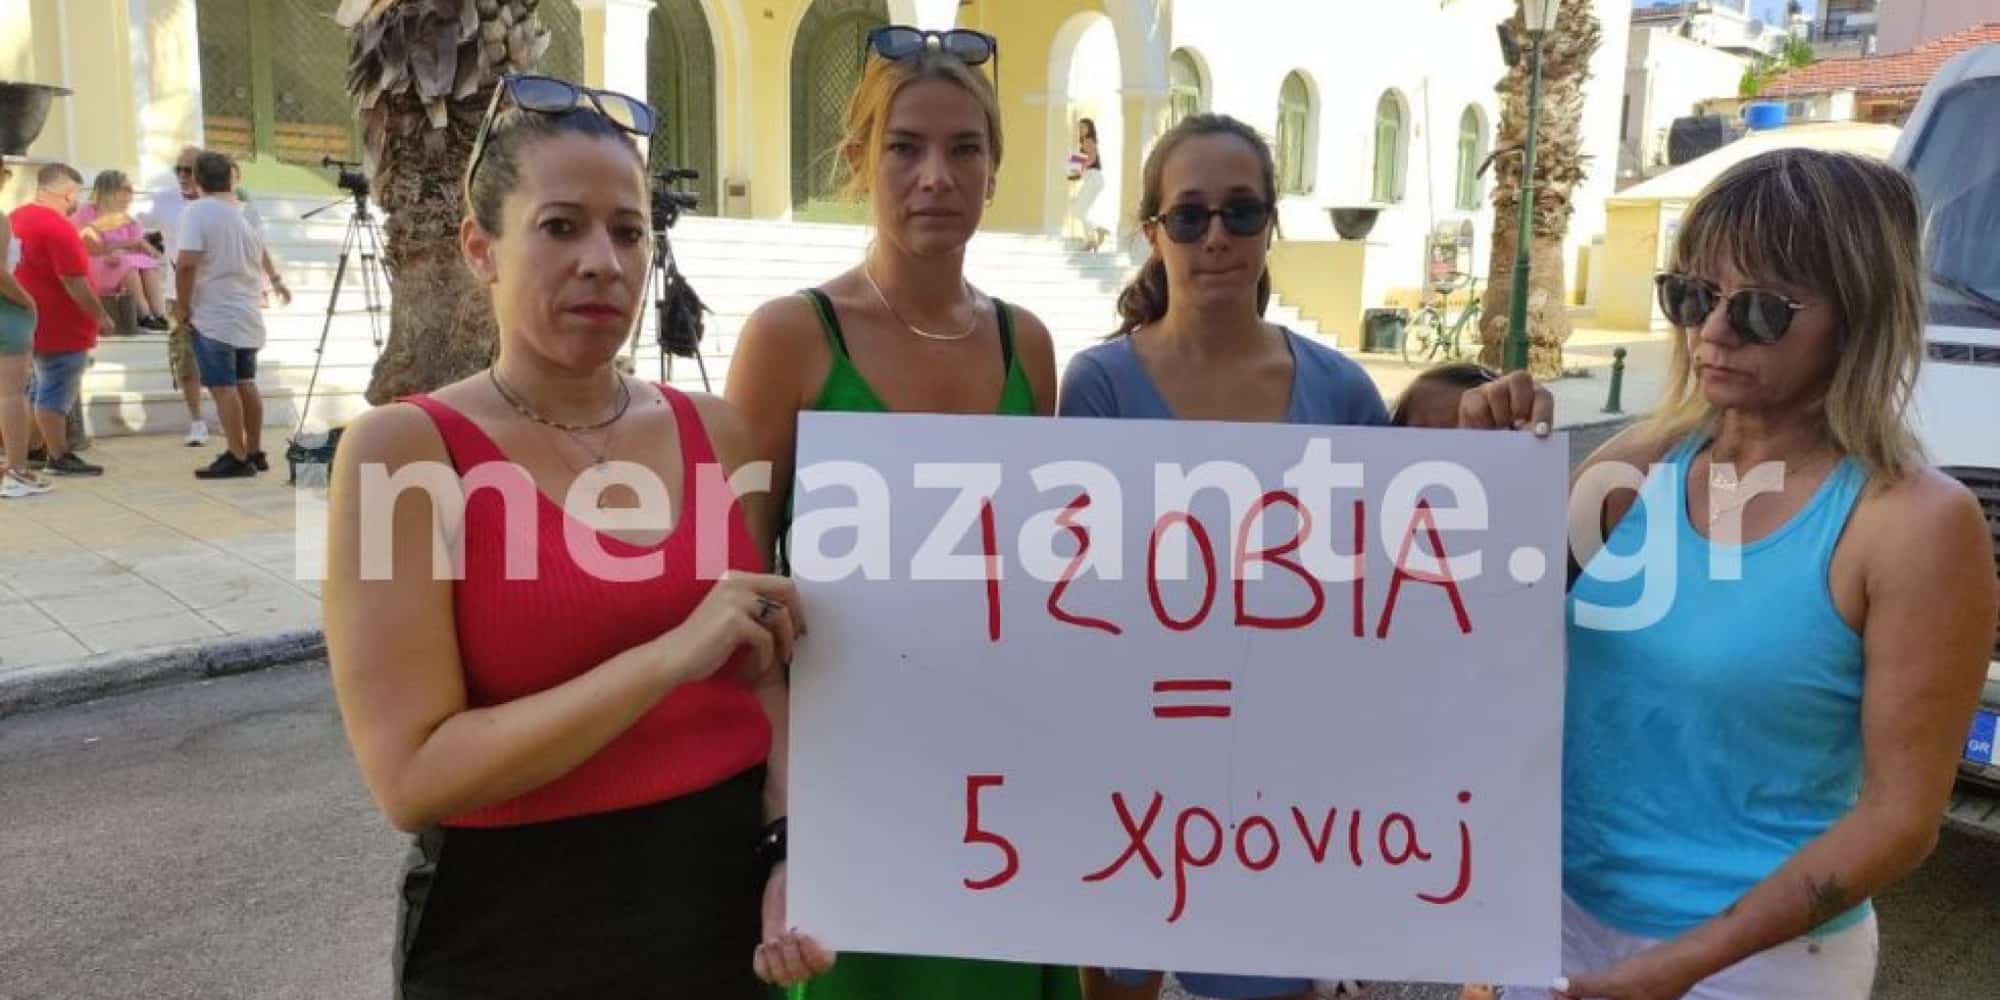 Γυναίκες συγκεντρώθηκαν έξω από τα δικαστήρια φωνάζοντας συνθήματα για τον συζυγοκτόνο στη Ζάκυνθο - Ζάκυνθος